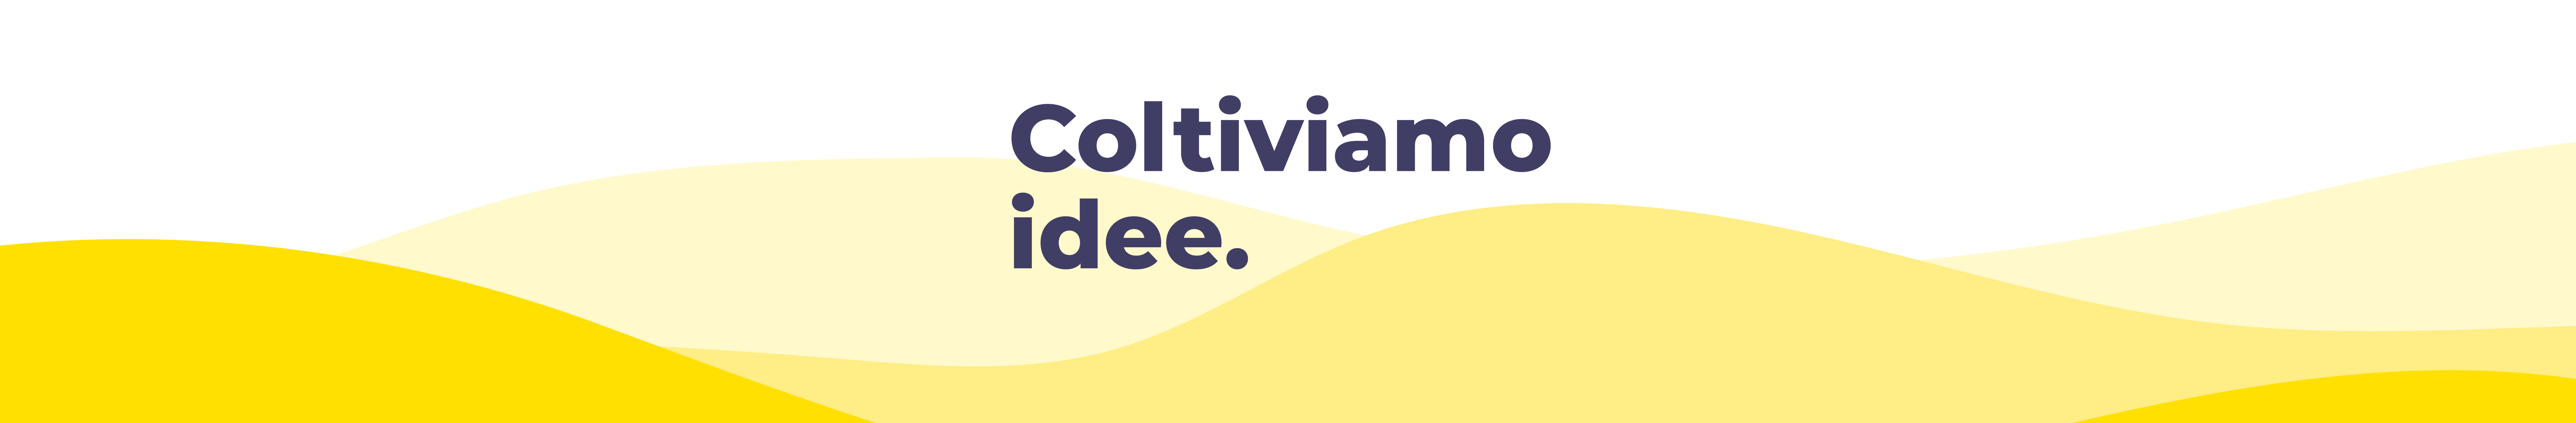 Prelibato .'s profile banner